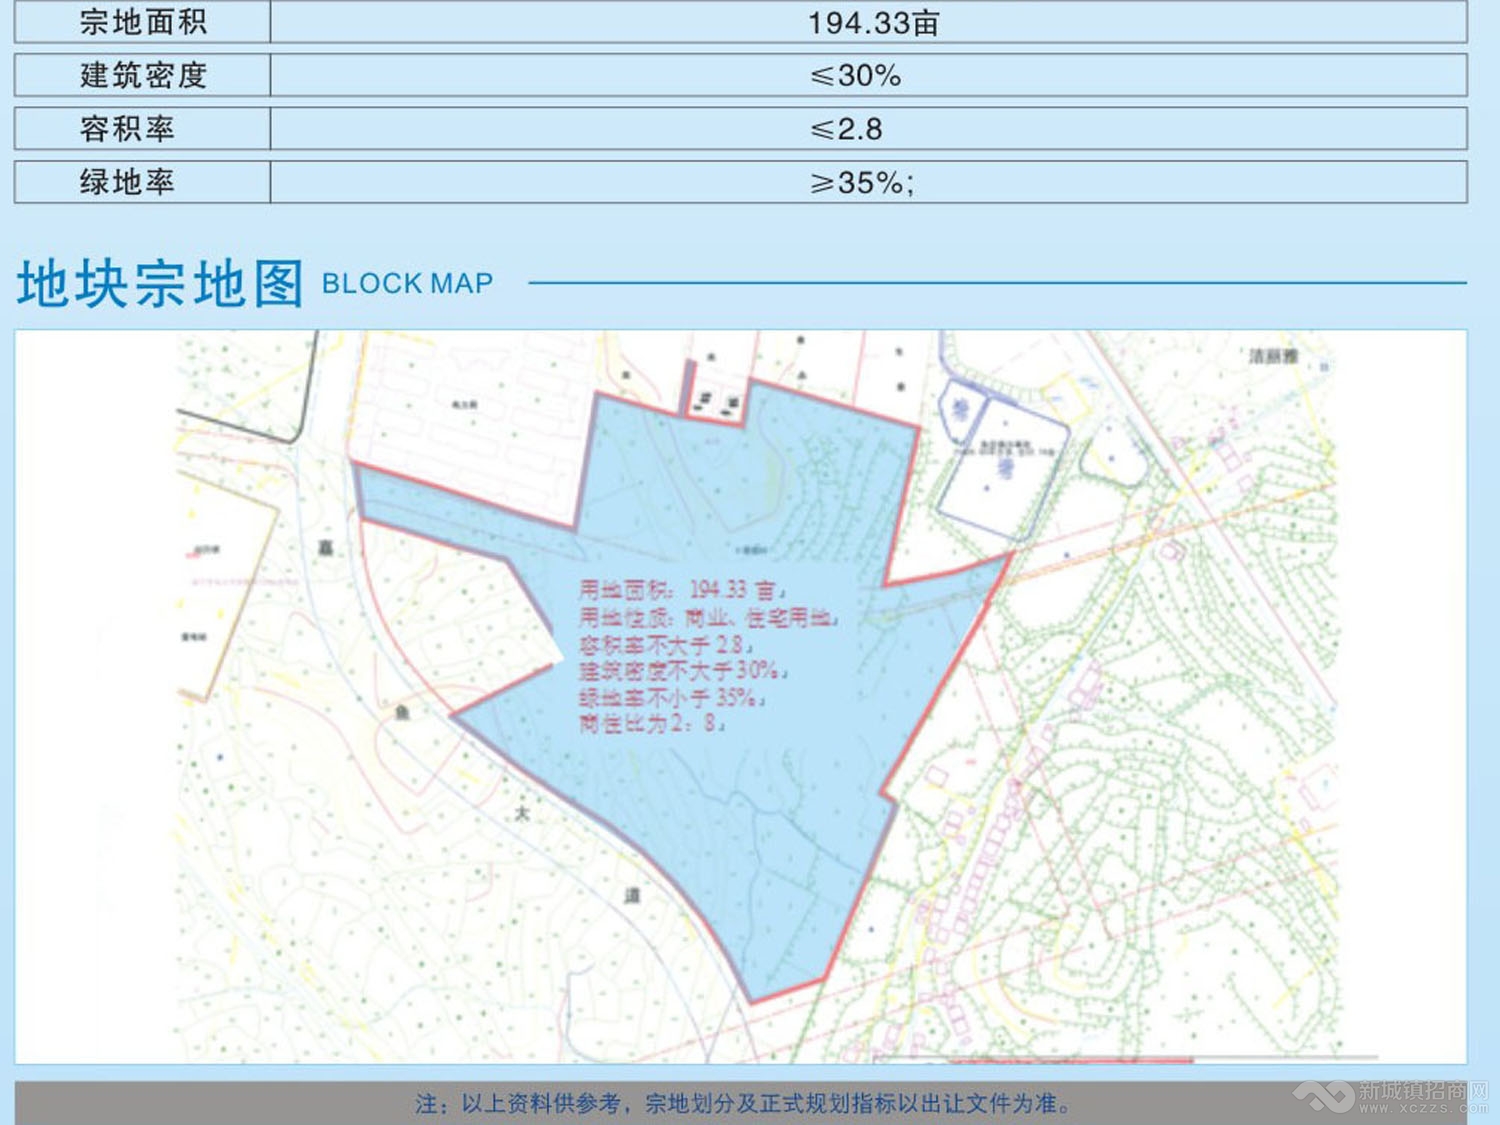 嘉鱼县嘉鱼大道1号地块规划图